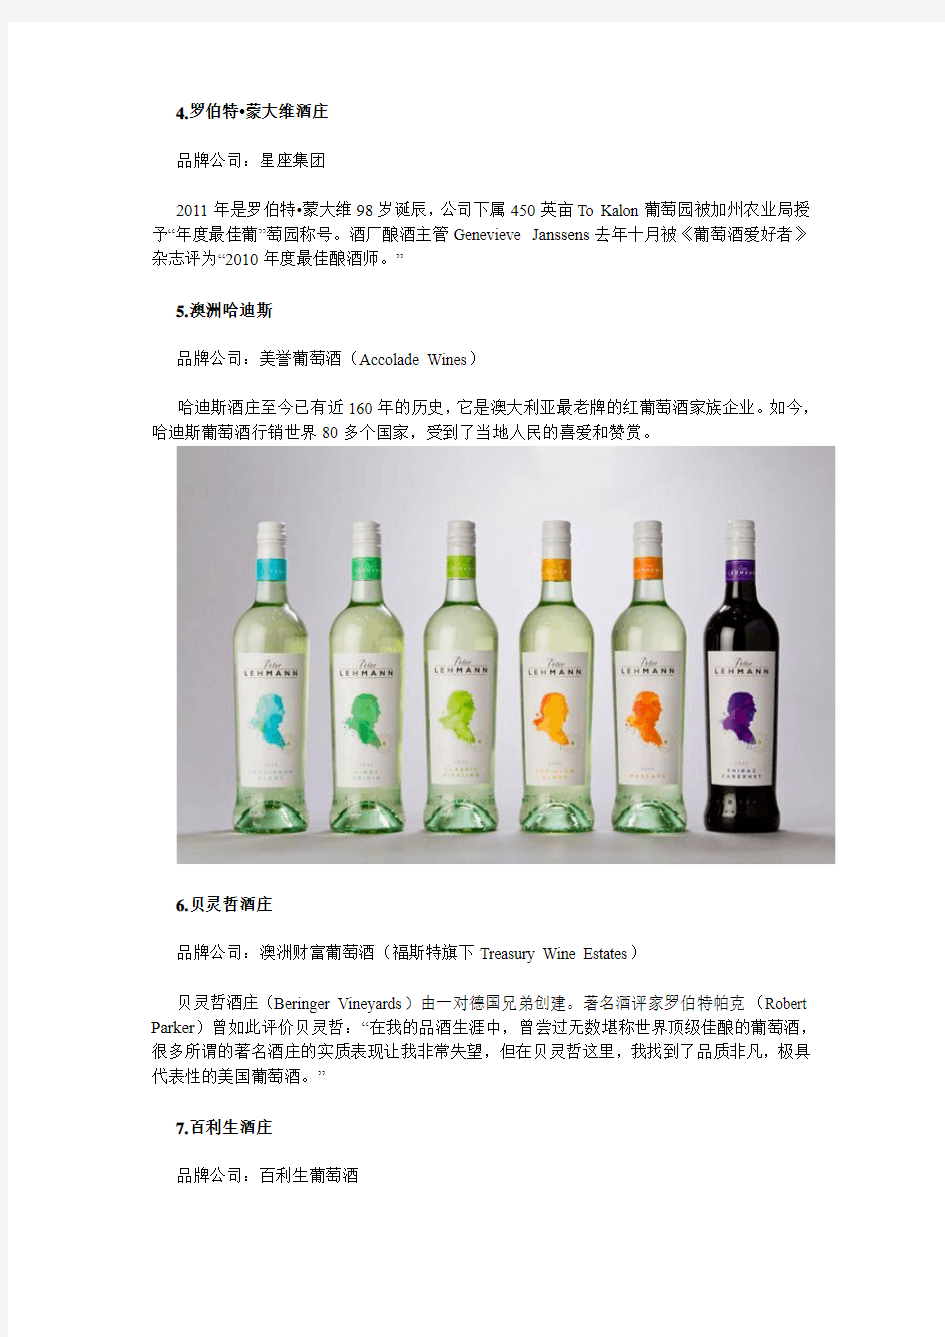 世界10大葡萄酒品牌详细介绍